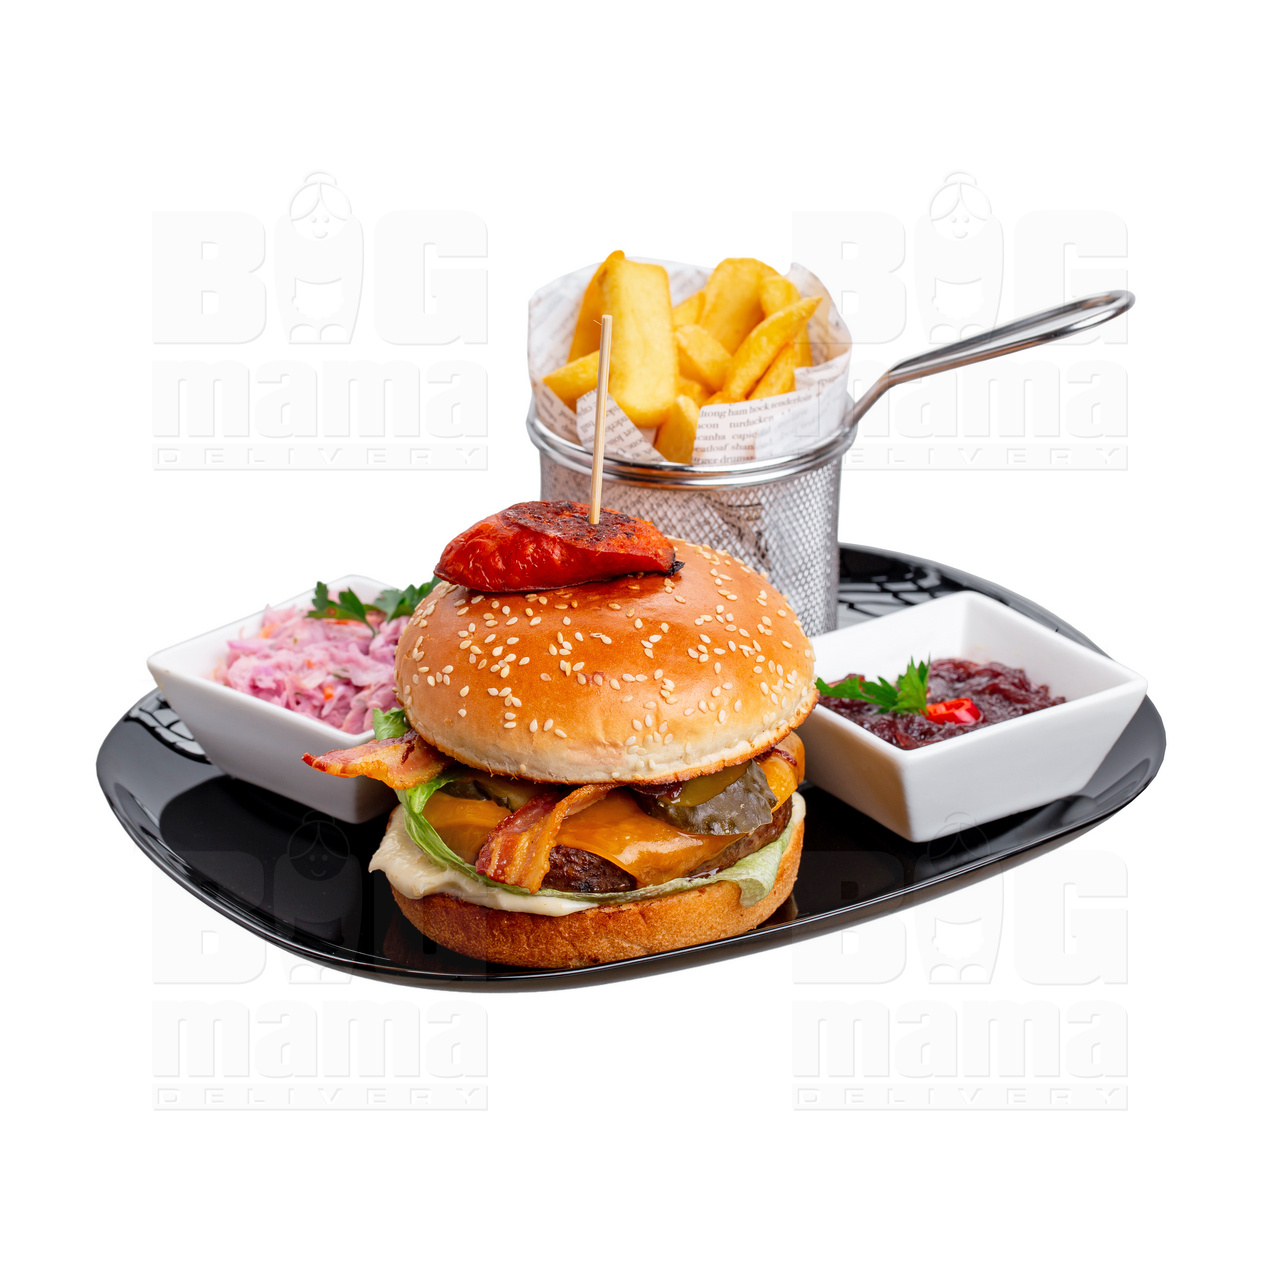 Product #256 image - Magyaros hamburger menü